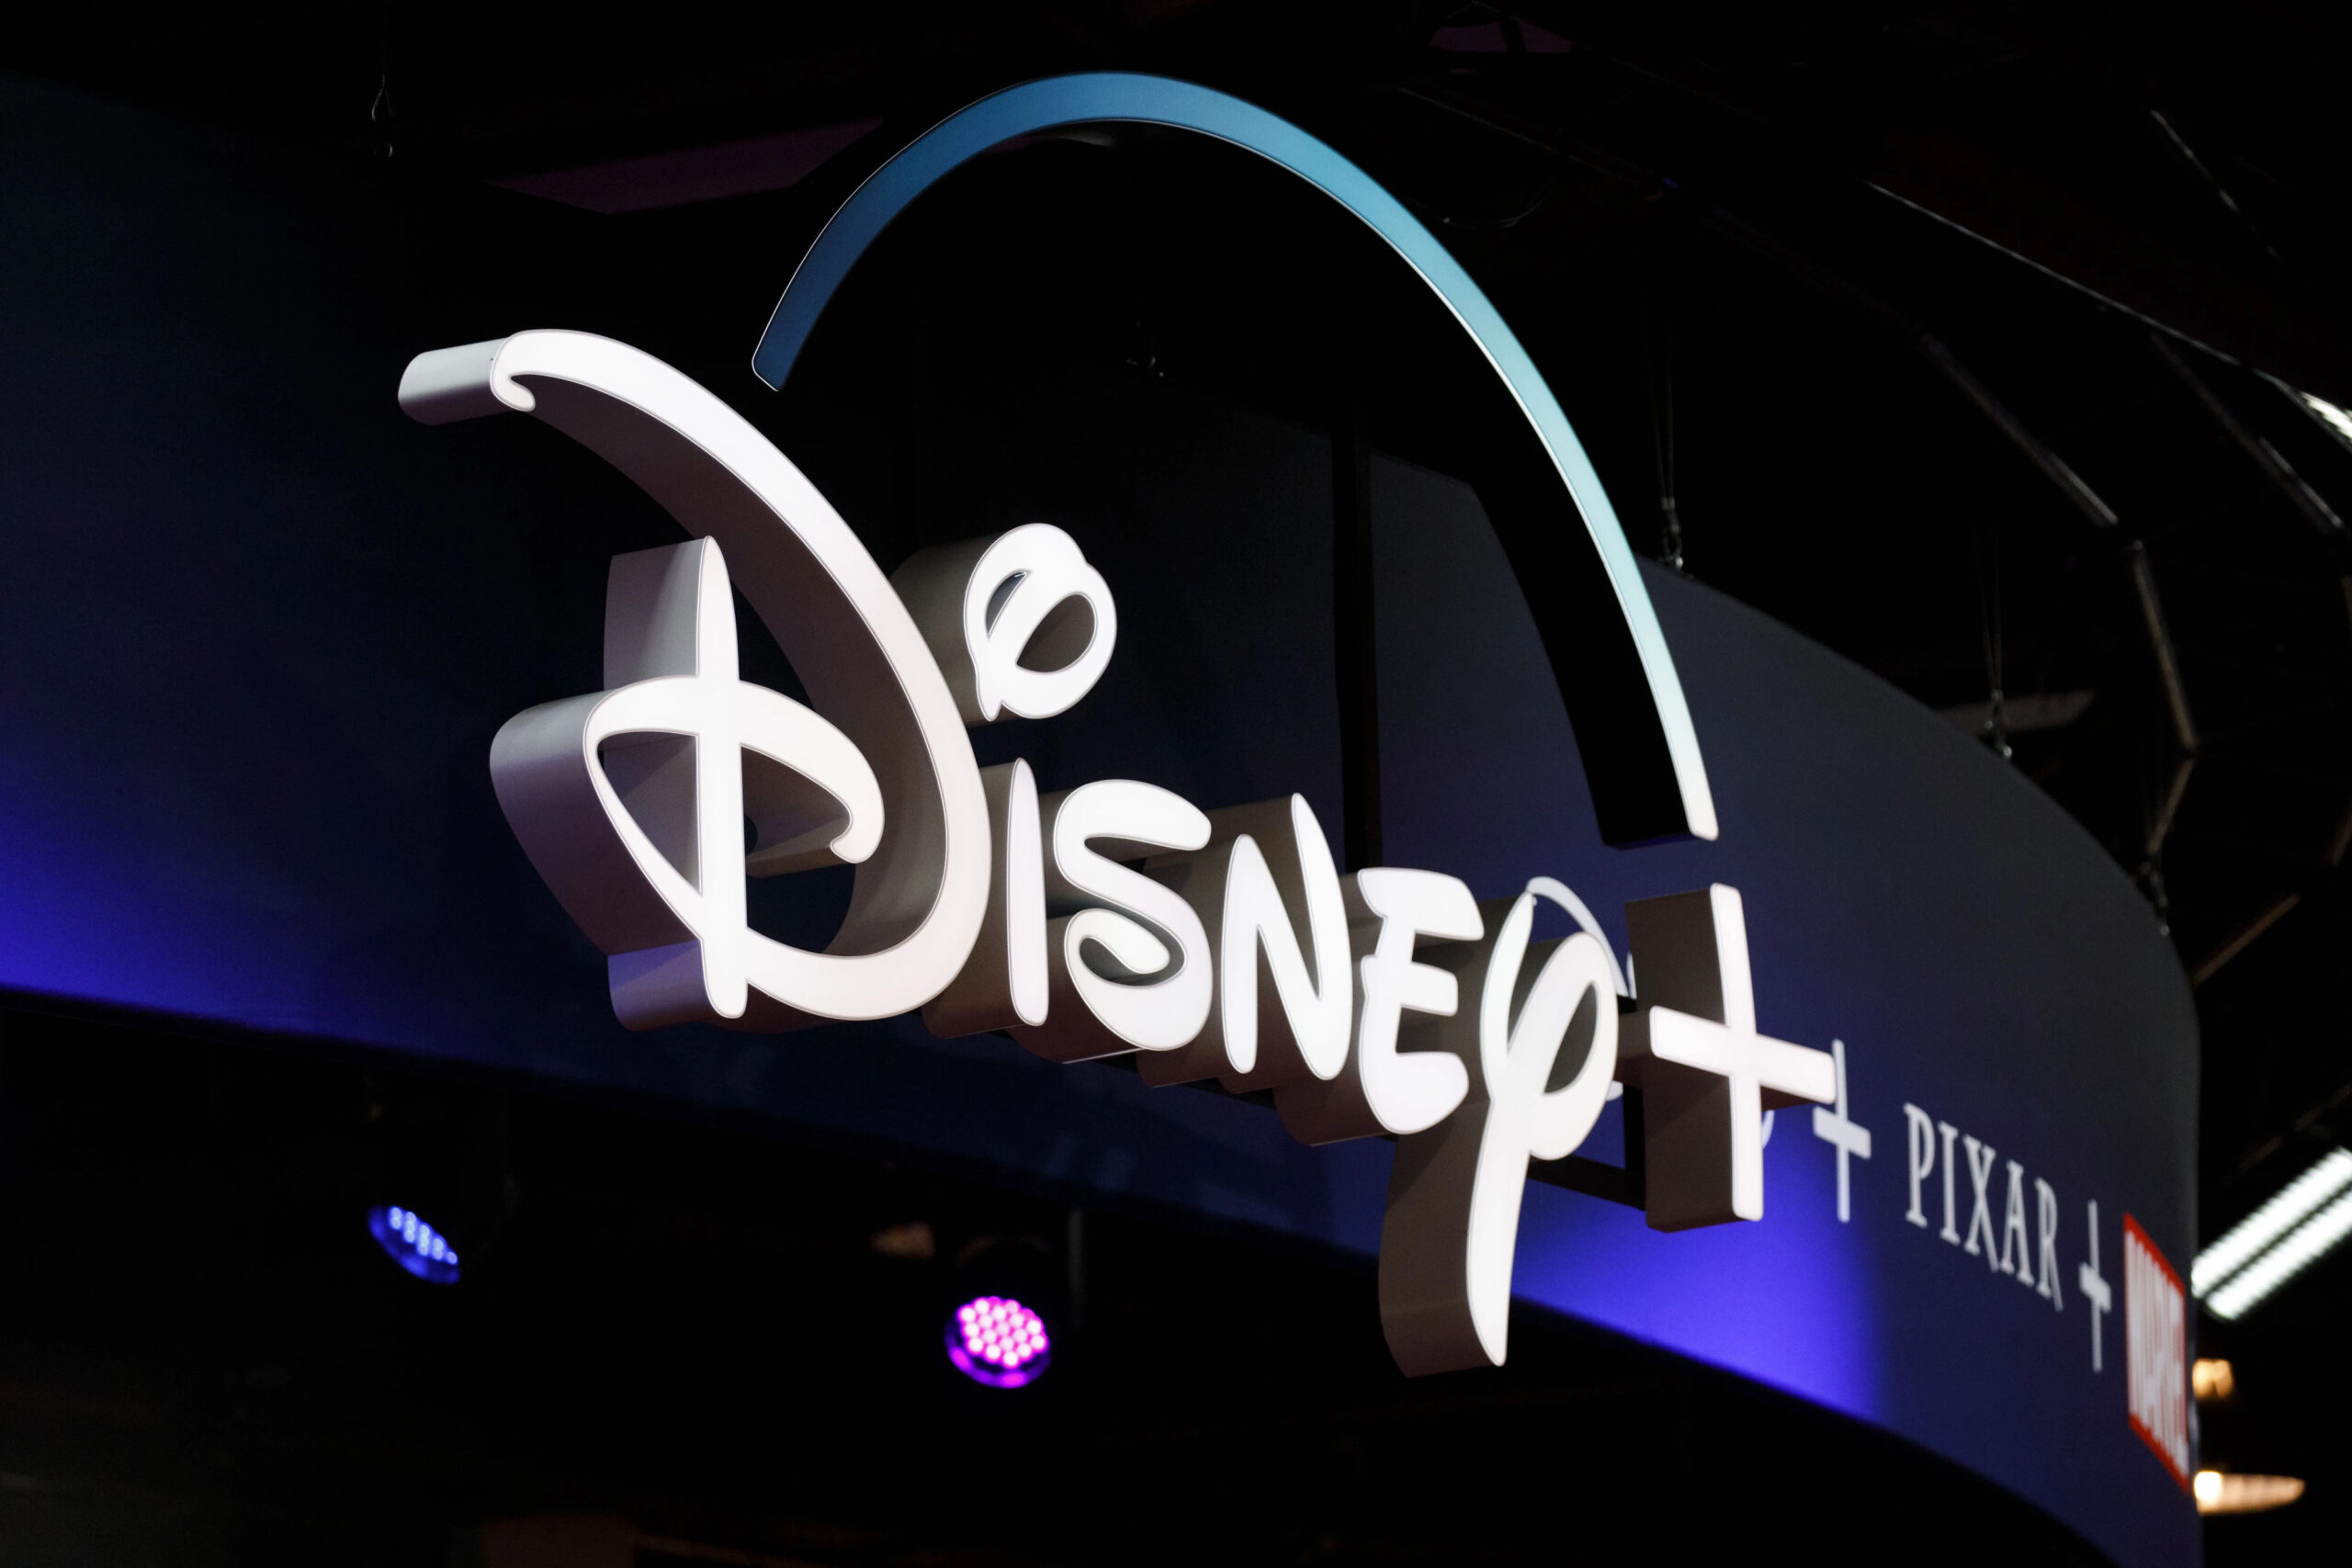 Disney+ - masowe zwolnienia pracowników